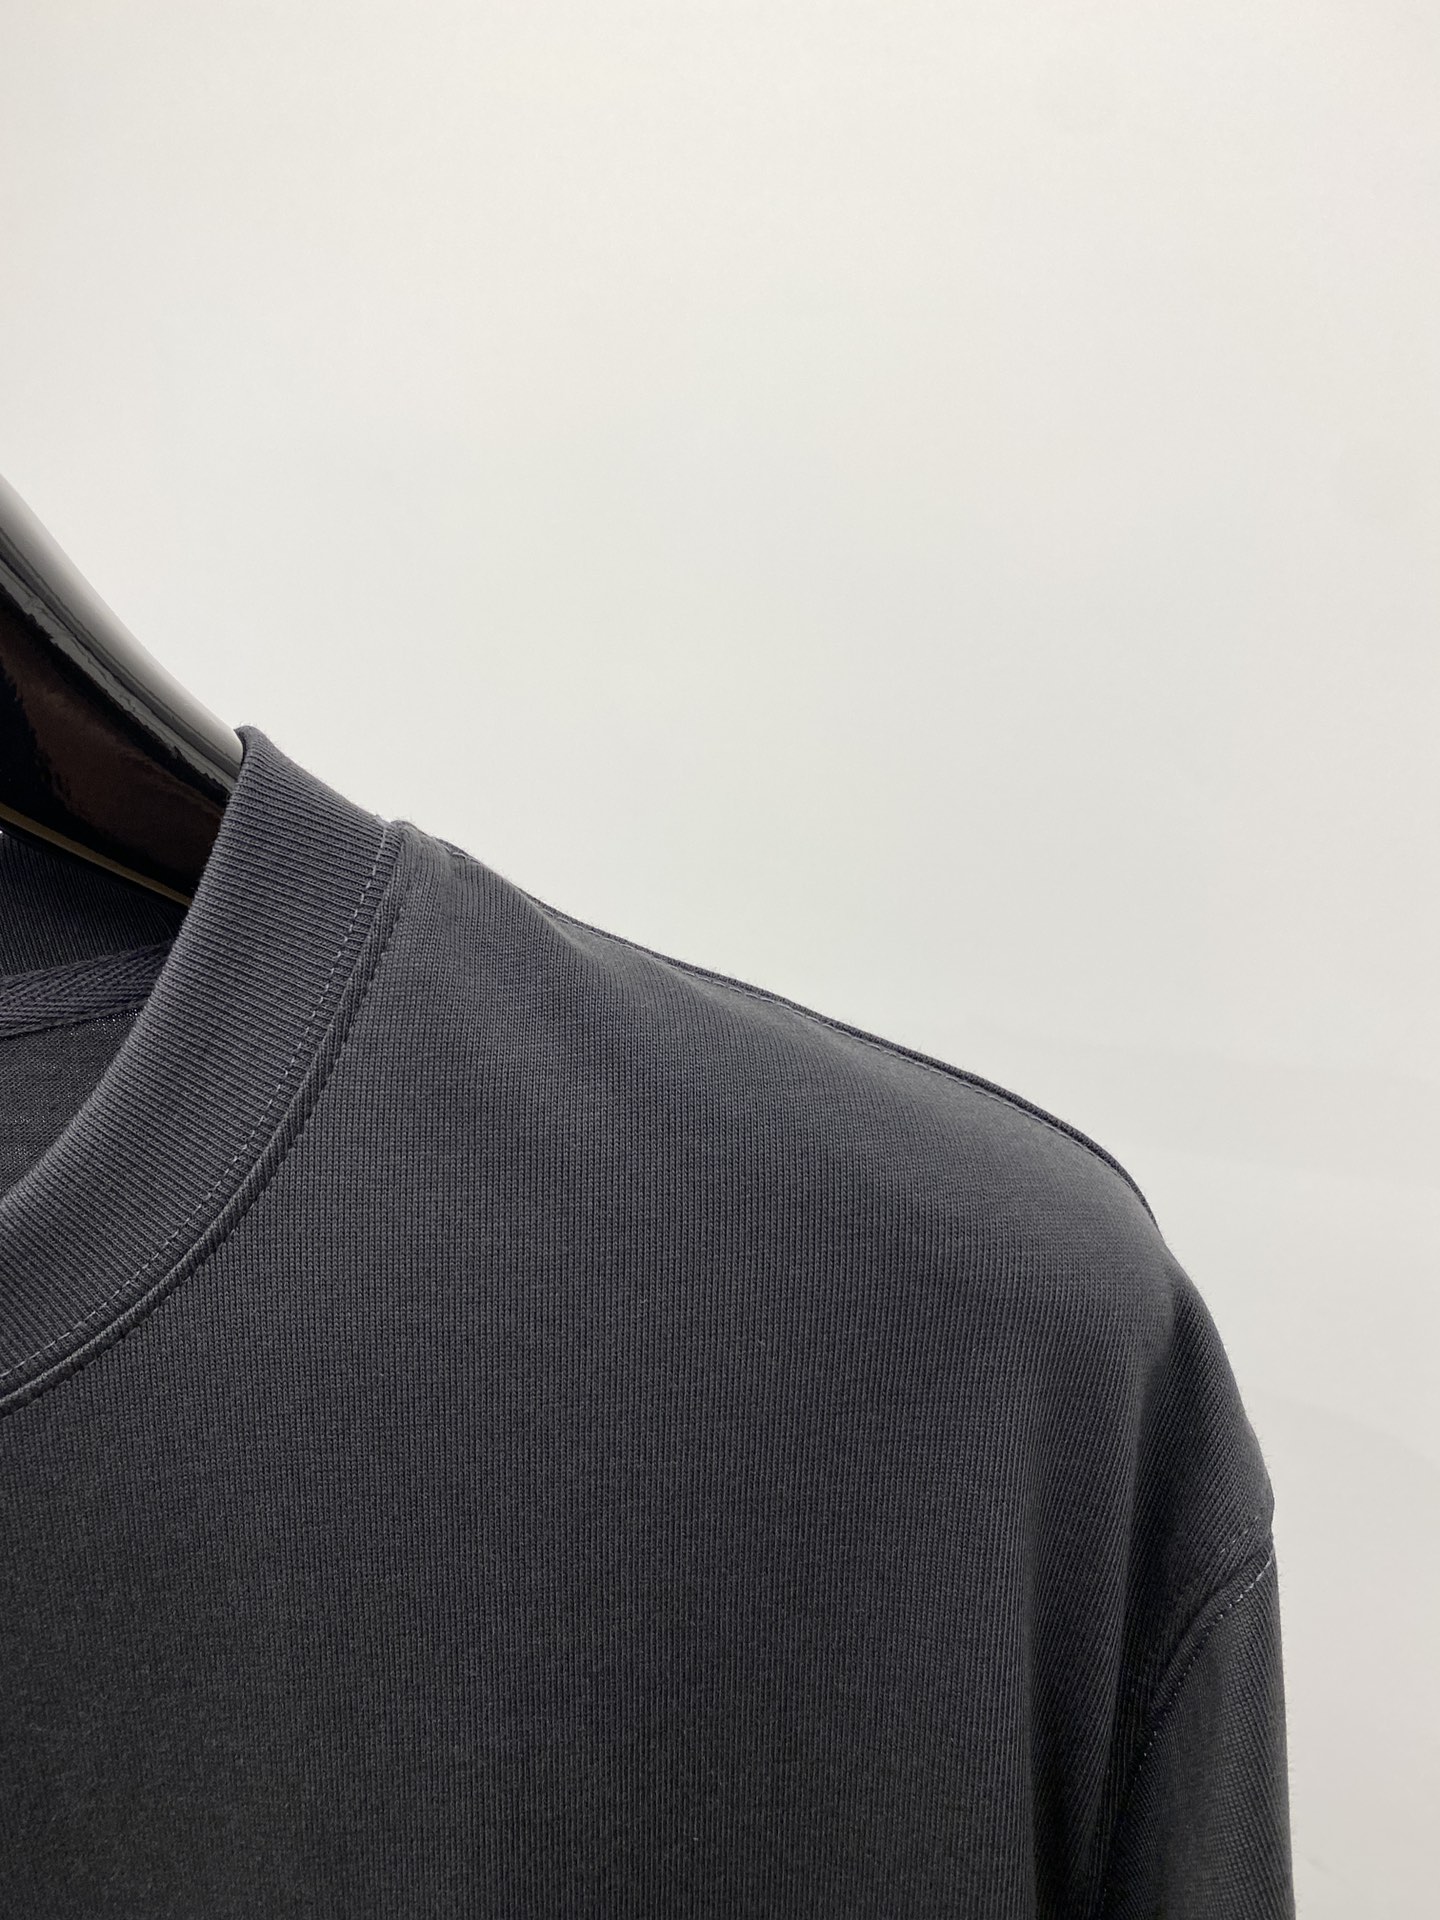 個性的 バレンシアガtシャツ 値段ｎ級品 トップス ファッション 人気 ロゴプリント シンプル 快適 ブラック_3